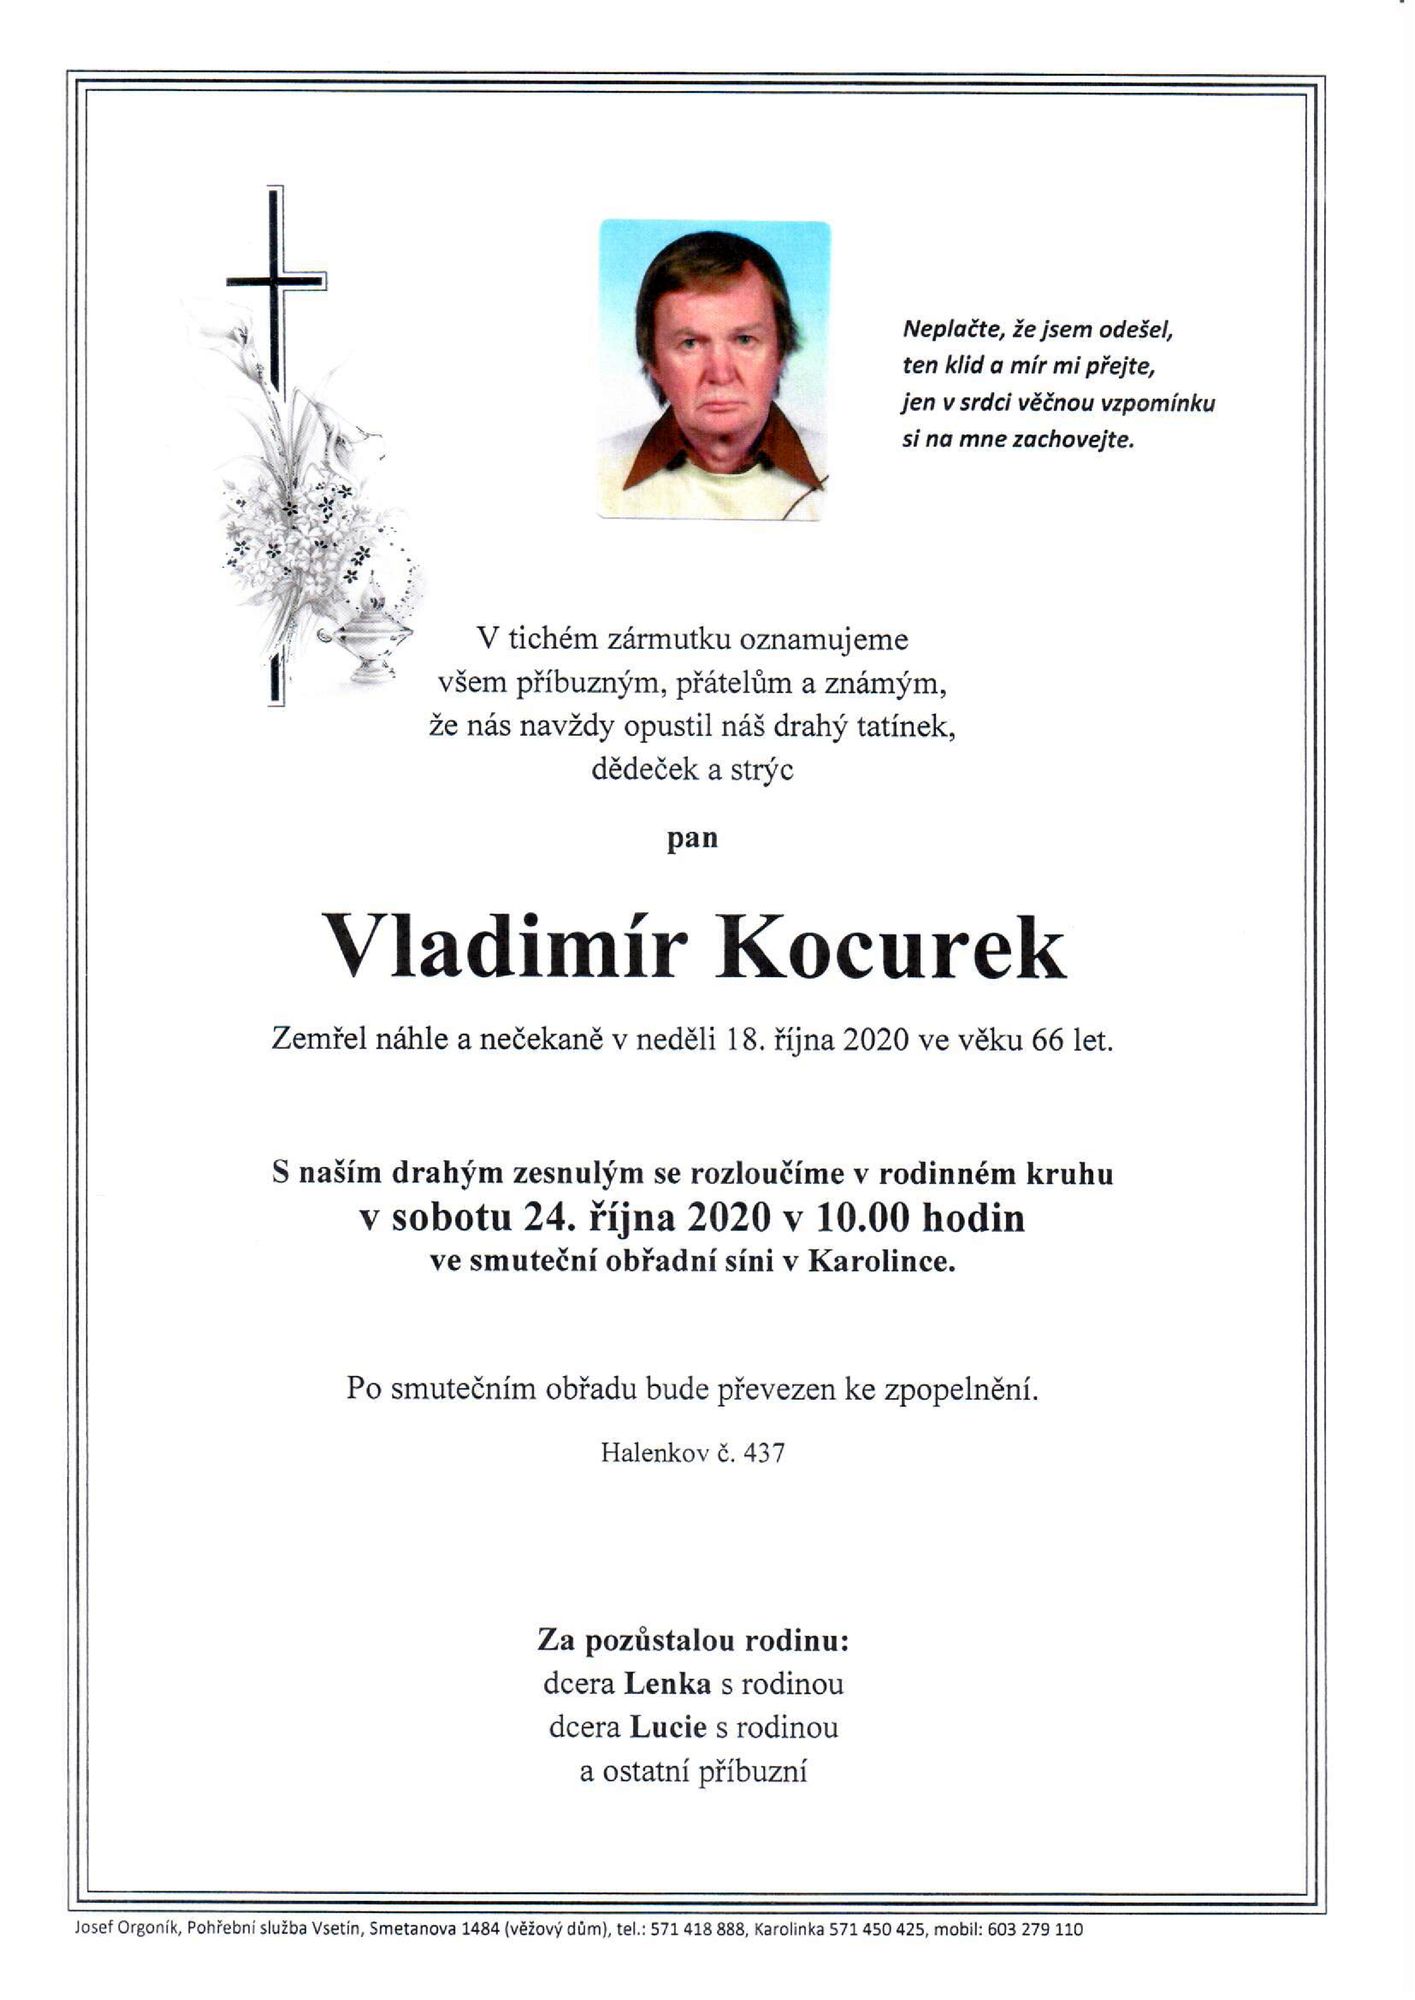 Vladimír Kocurek